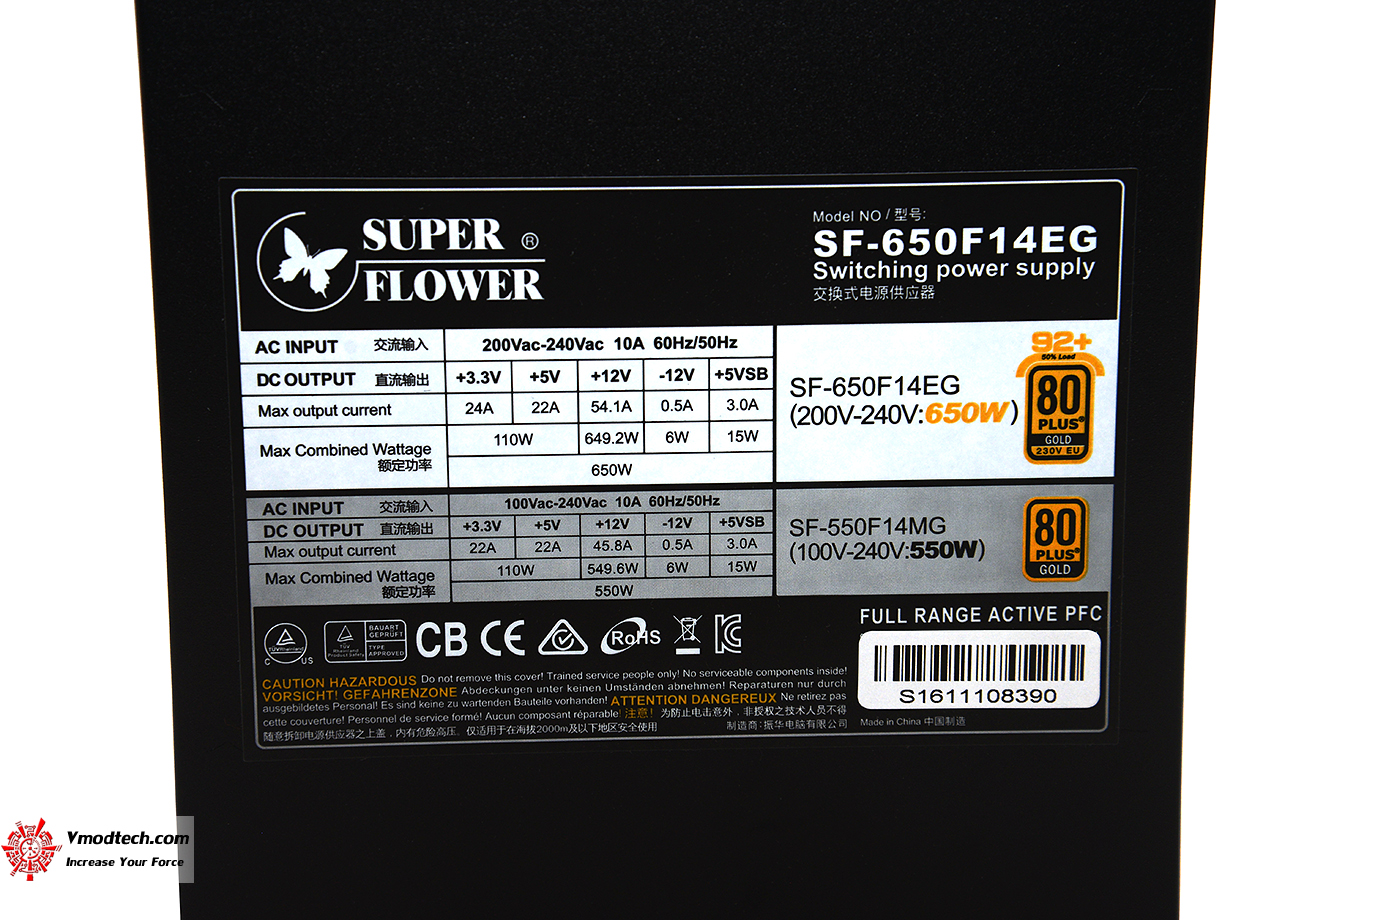 dsc 5981 SUPER FLOWER LEADEX II GOLD 650W REVIEW